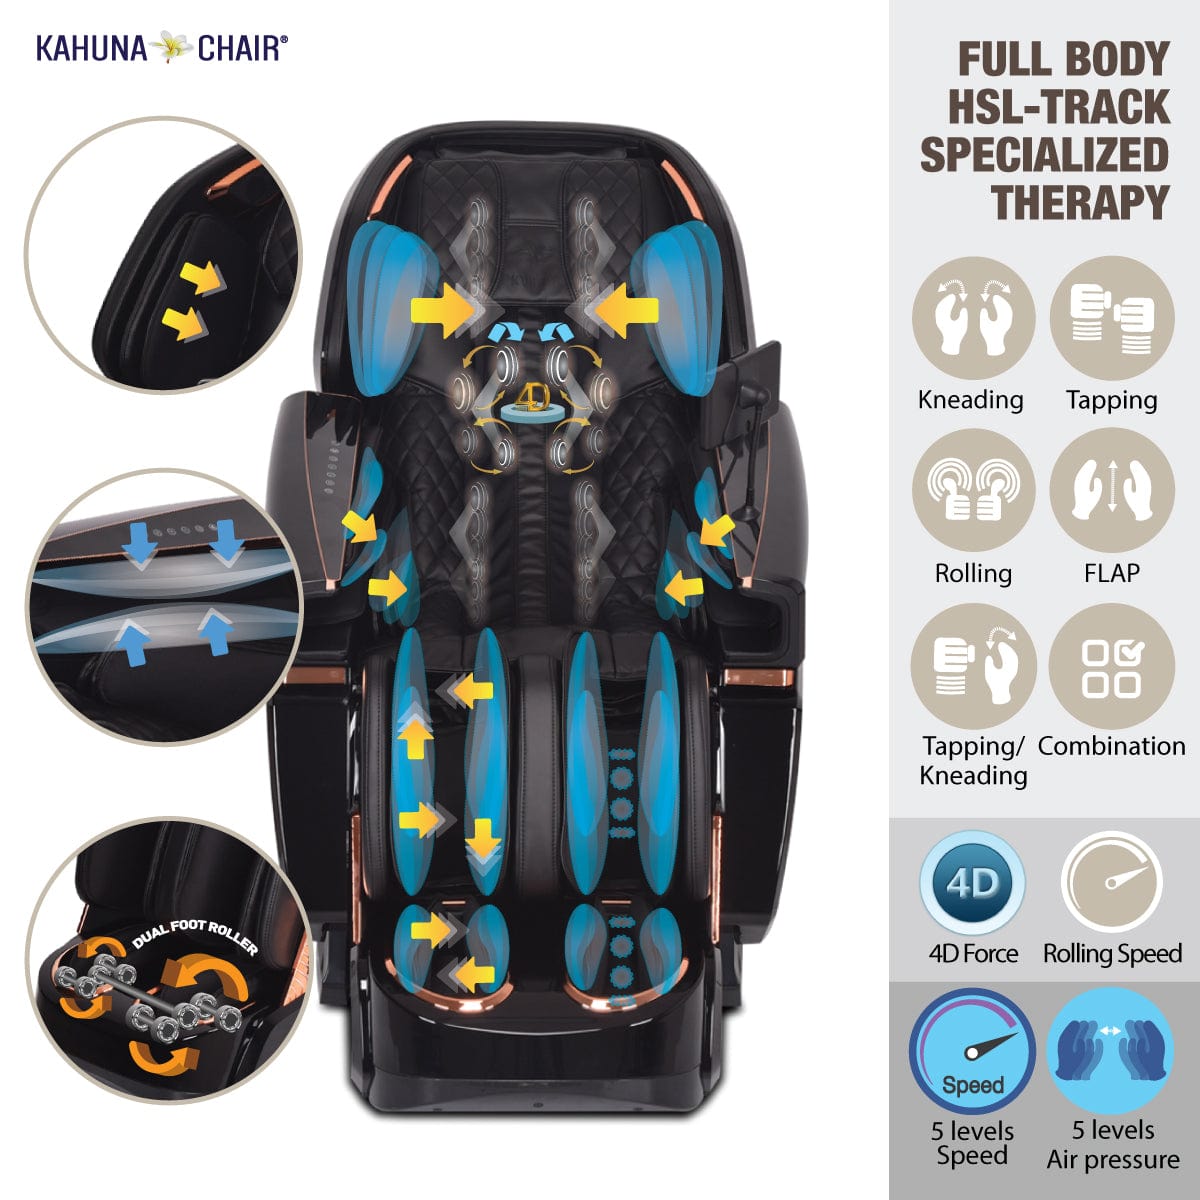 Kahuna Chair – EM 8500 [Brown/Darkbrown] - Massage Chair